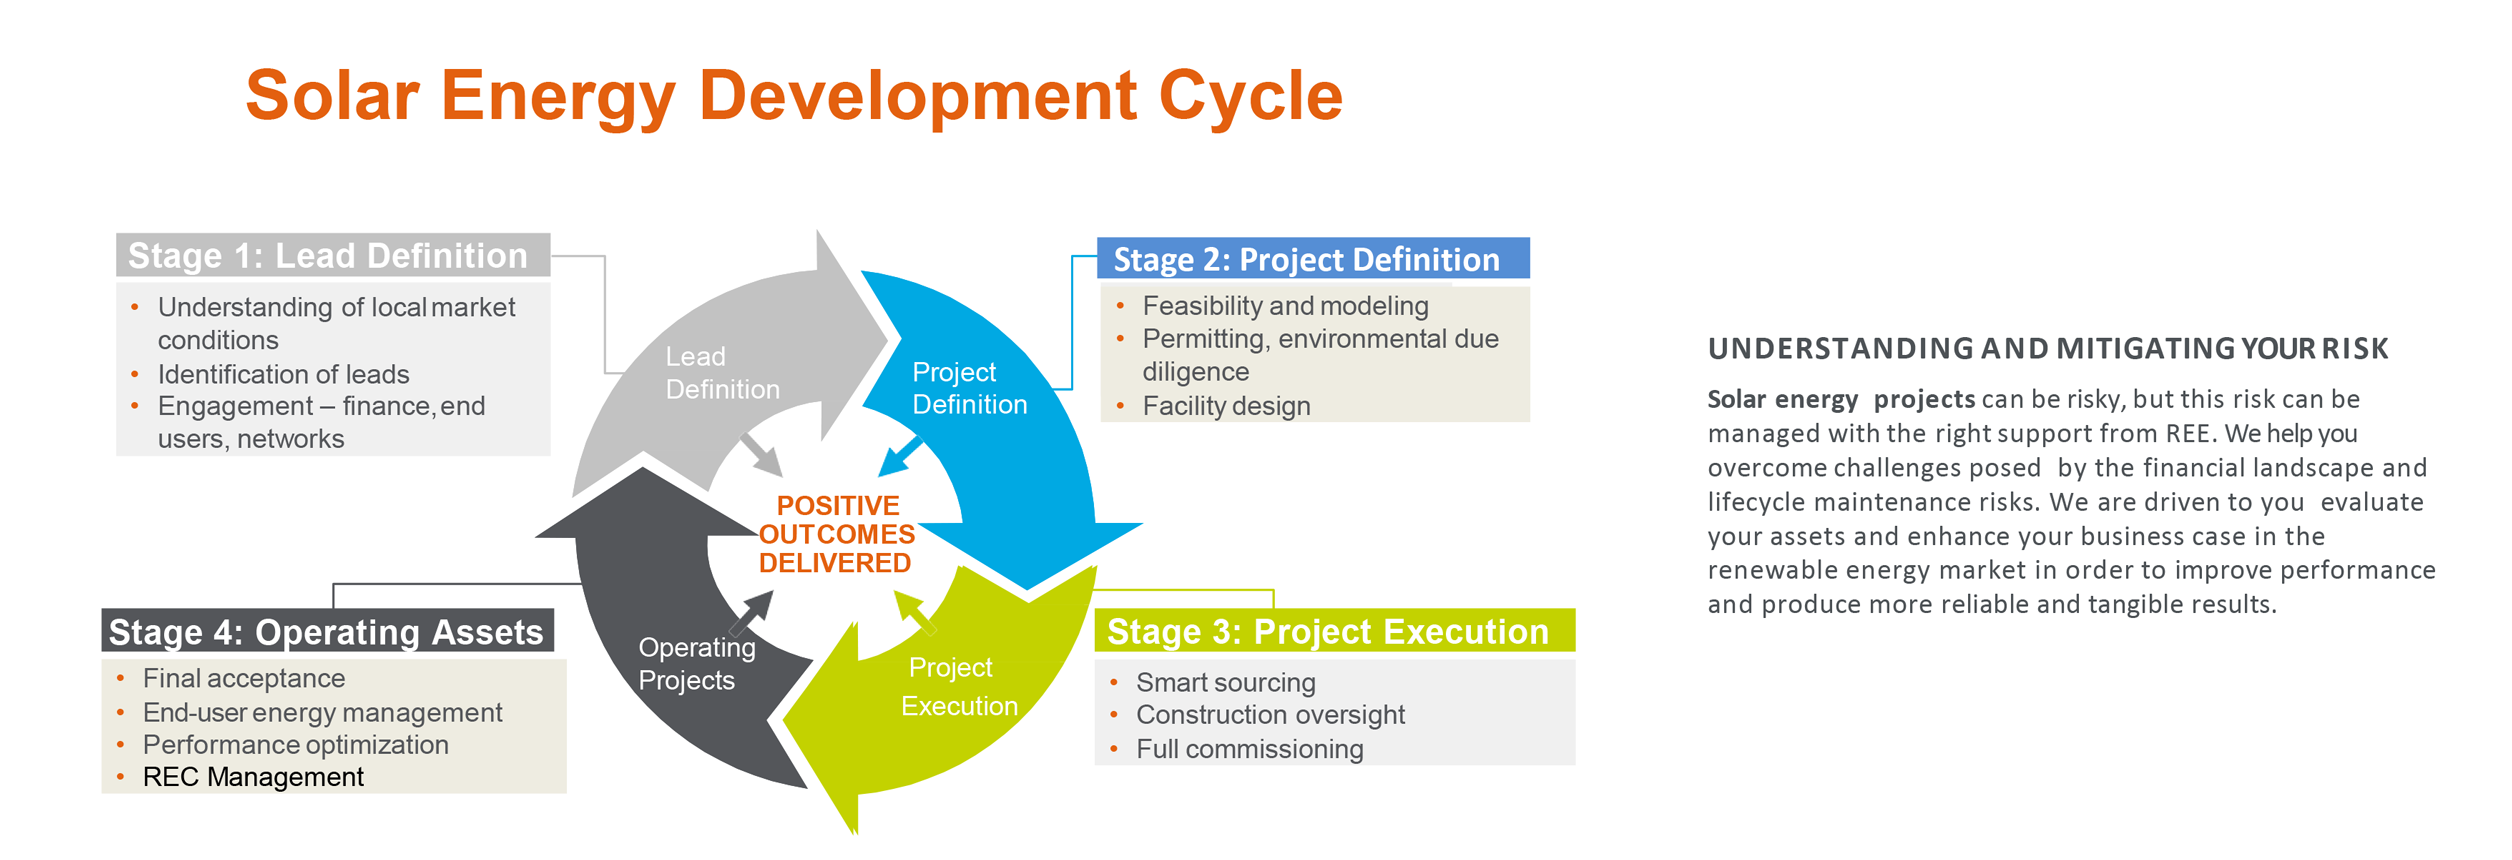 Solar Energy Development Cycle Infographic